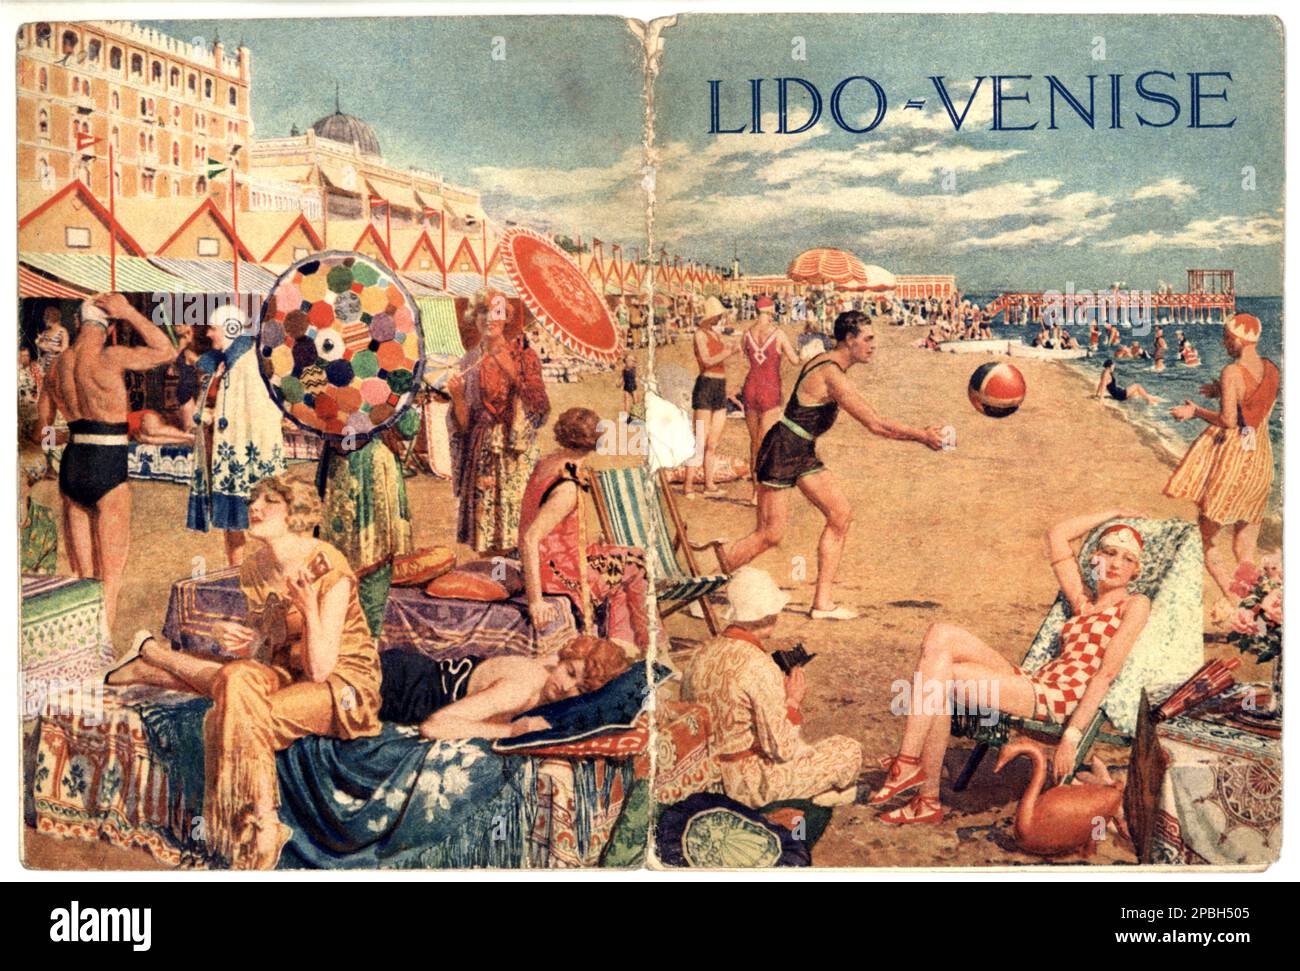 1927 , LIDO DI VENEZIA ,  ITALY : The cover ( artwork by italian illustrator artist FORTUNINO MATANIA ) of an advertising touristic magazine on LIDO DI VENEZIA beach . In this illustration the beach of HOTEL EXCELSIOR - pubblicita' - VENICE - ITALIA - FOTO STORICHE - HISTORY - GEOGRAFIA - GEOGRAPHY  -  Laguna - VENETO -   - ARTE - ARTS - illustratore - copertina - spiaggia - costume da bagno - swimsuit - bagnanti - TURISMO - TURISTA - TURISTI - plage - TOURISM - TOURIST - ART DECO - ombrello da sole - parasole - umbrella ----  Archivio GBB Stock Photo